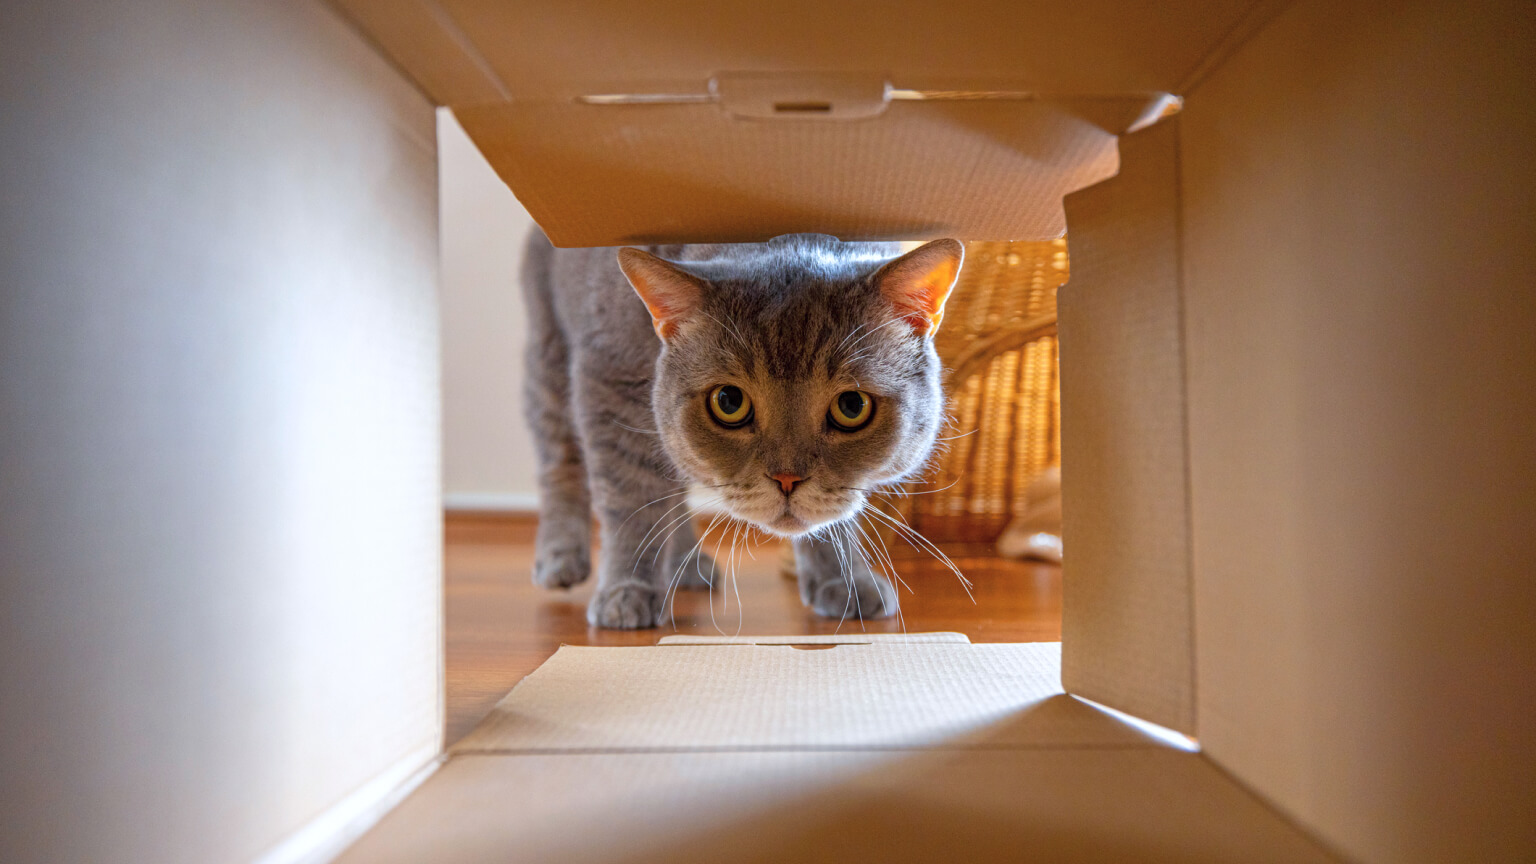 Nieuwsgierige kat kijkt naar wat er in de kartonnen doos zit